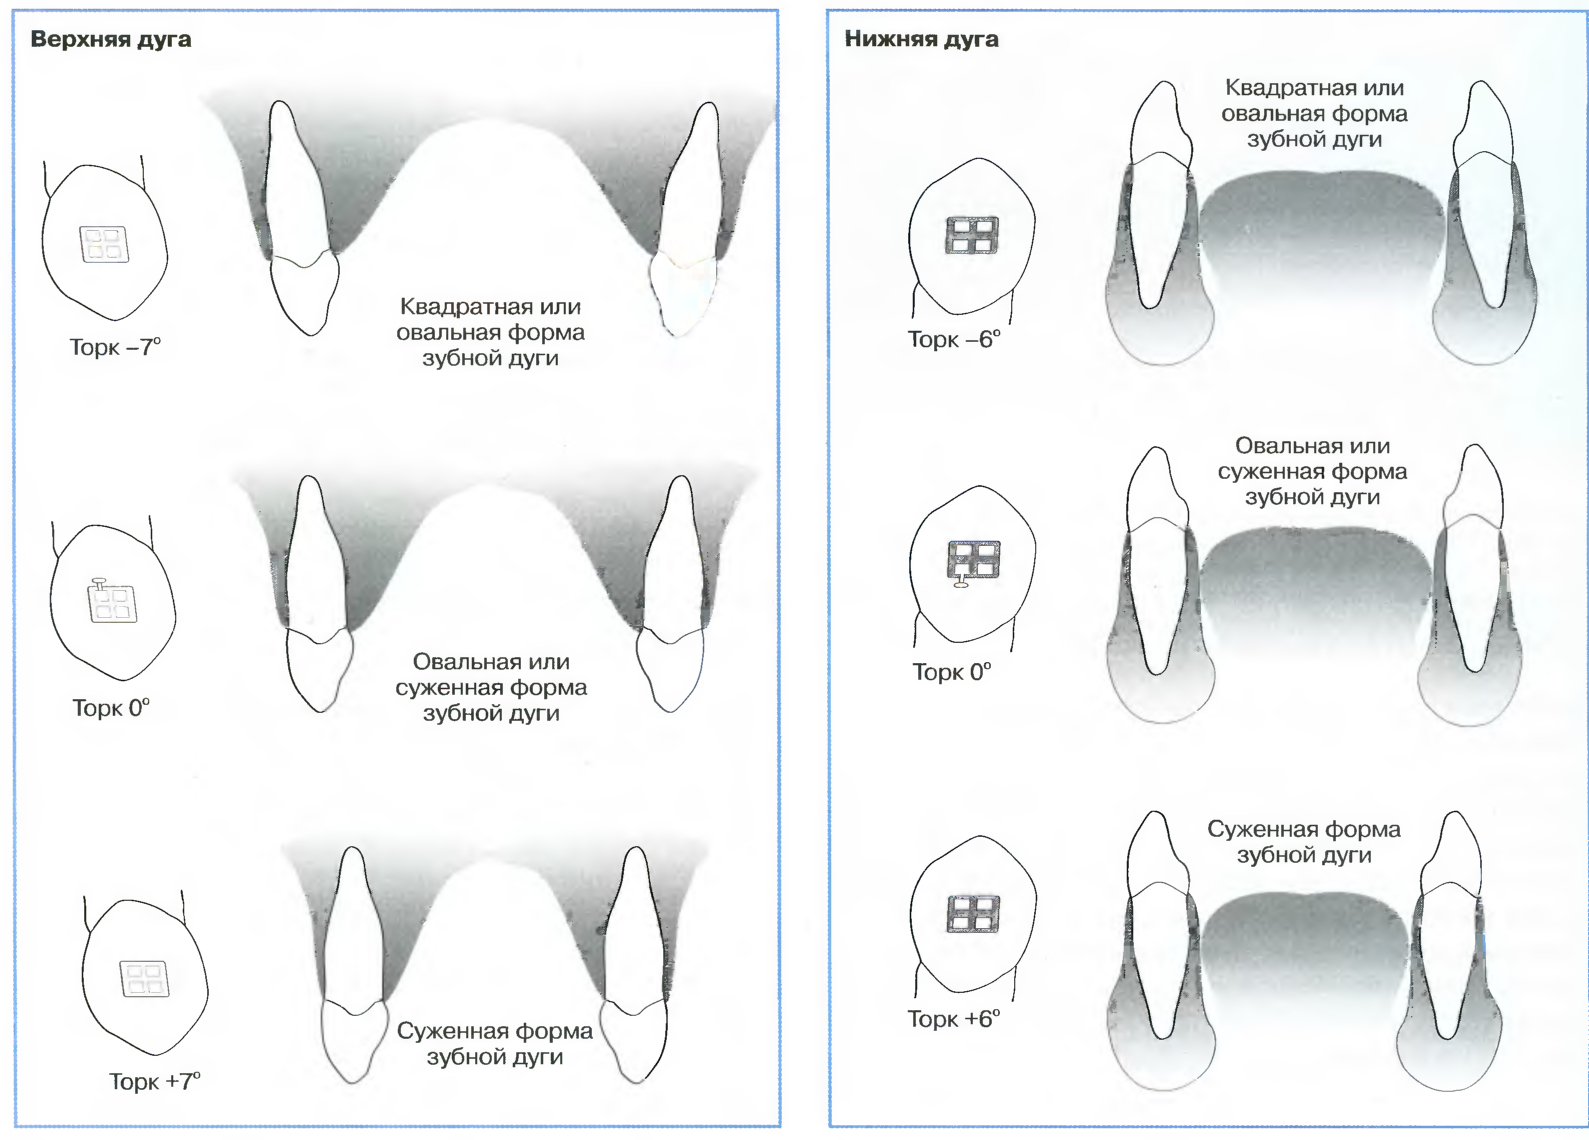 Форма зубной дуги нижней челюсти